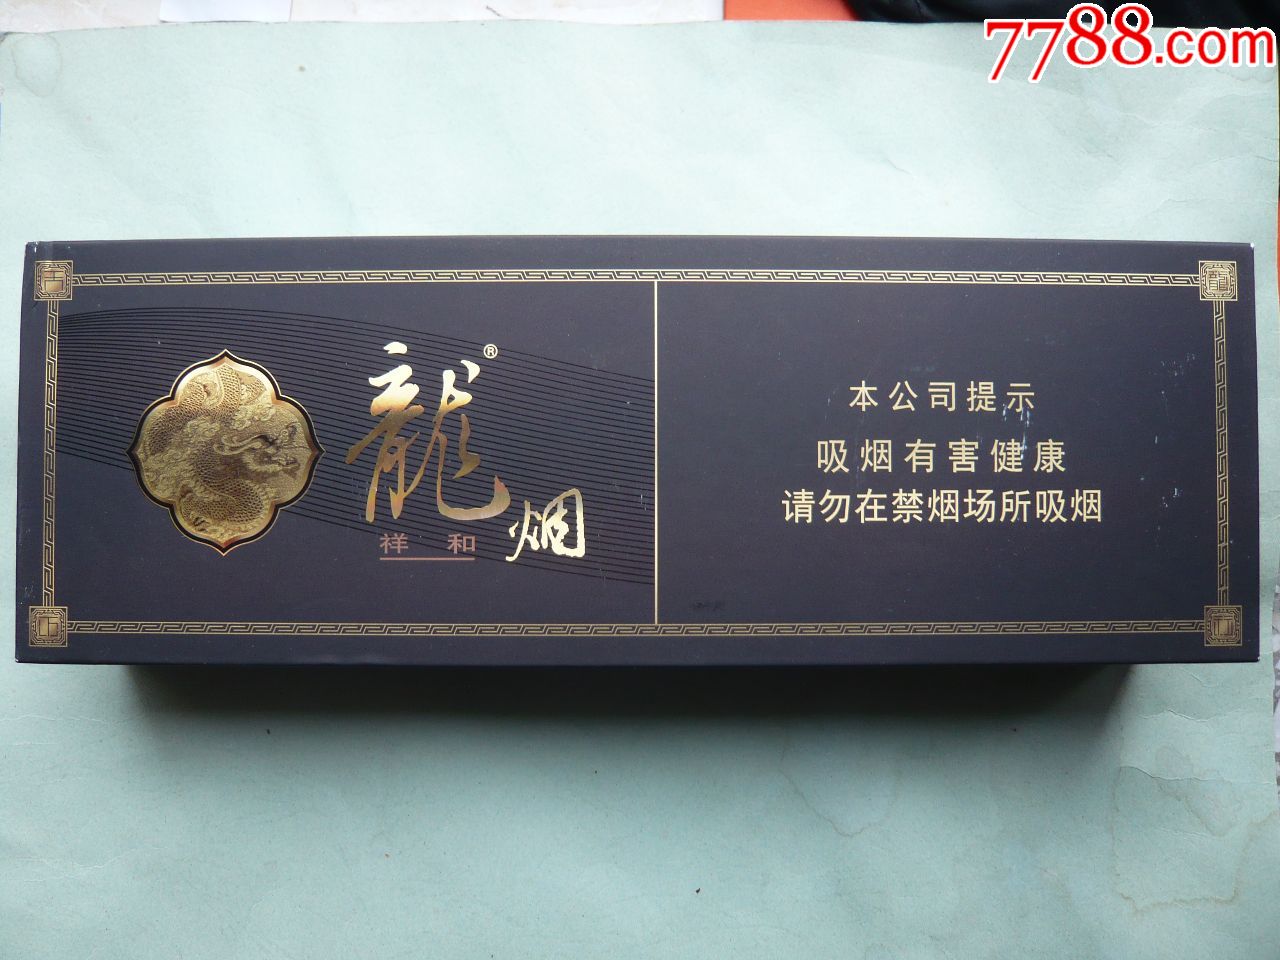 条盒烟标:龙烟·祥和,哈尔滨,黑龙江烟草工业有限责任公司出品,内含两